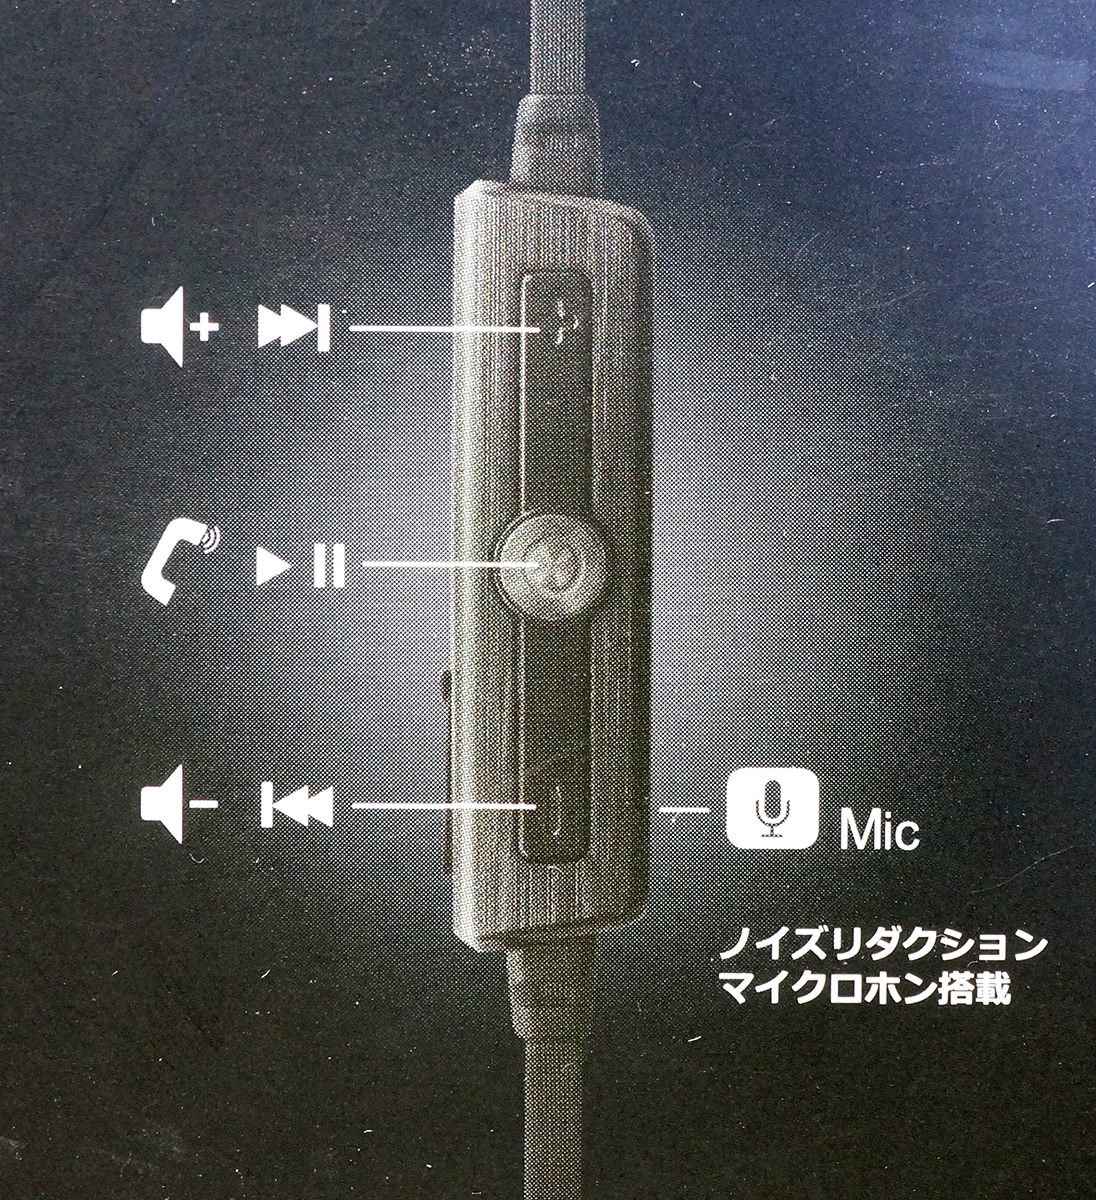 新文章未使用NAGAOKA BT806藍牙無線耳機磁鐵開關安裝 原文:新品未使用 NAGAOKA BT806 Bluetooth ワイヤレスイヤホン マグネットスイッチ搭載